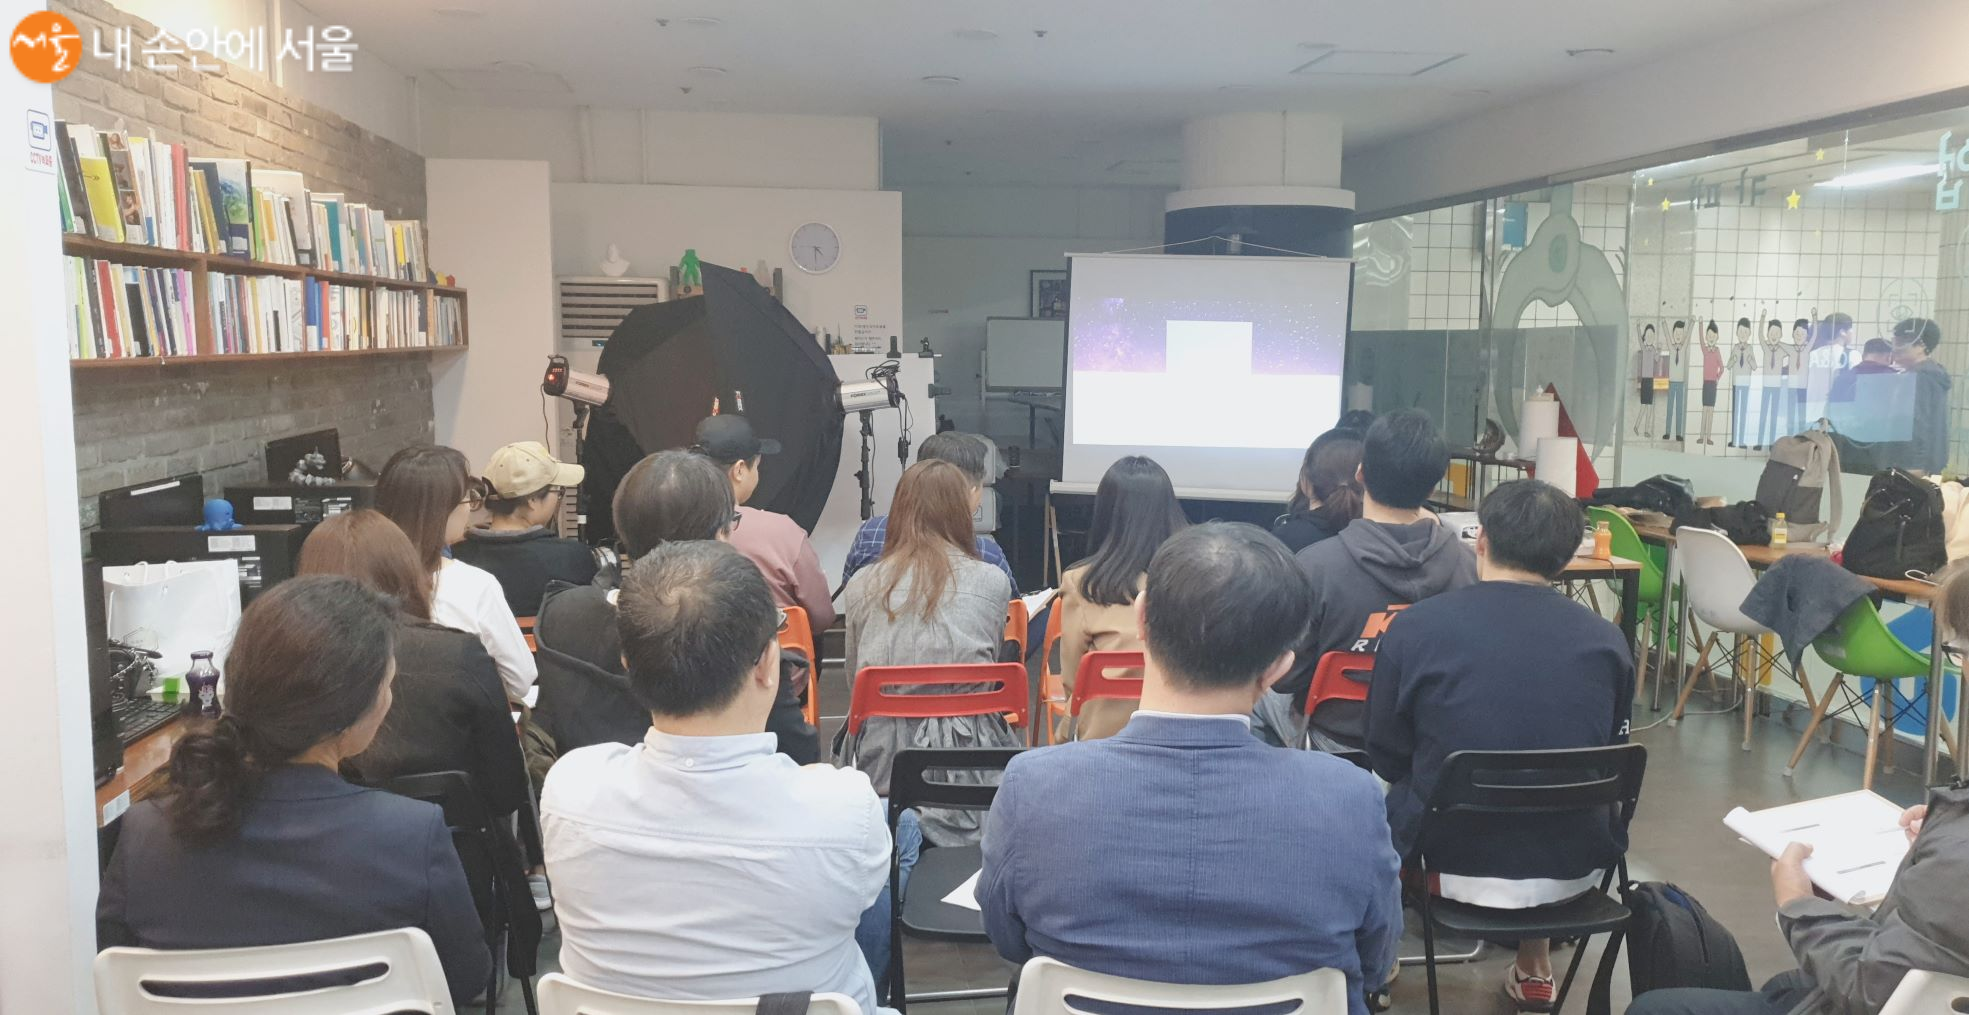 2019년 서울창업카페 제품사진 촬영기법 교육 